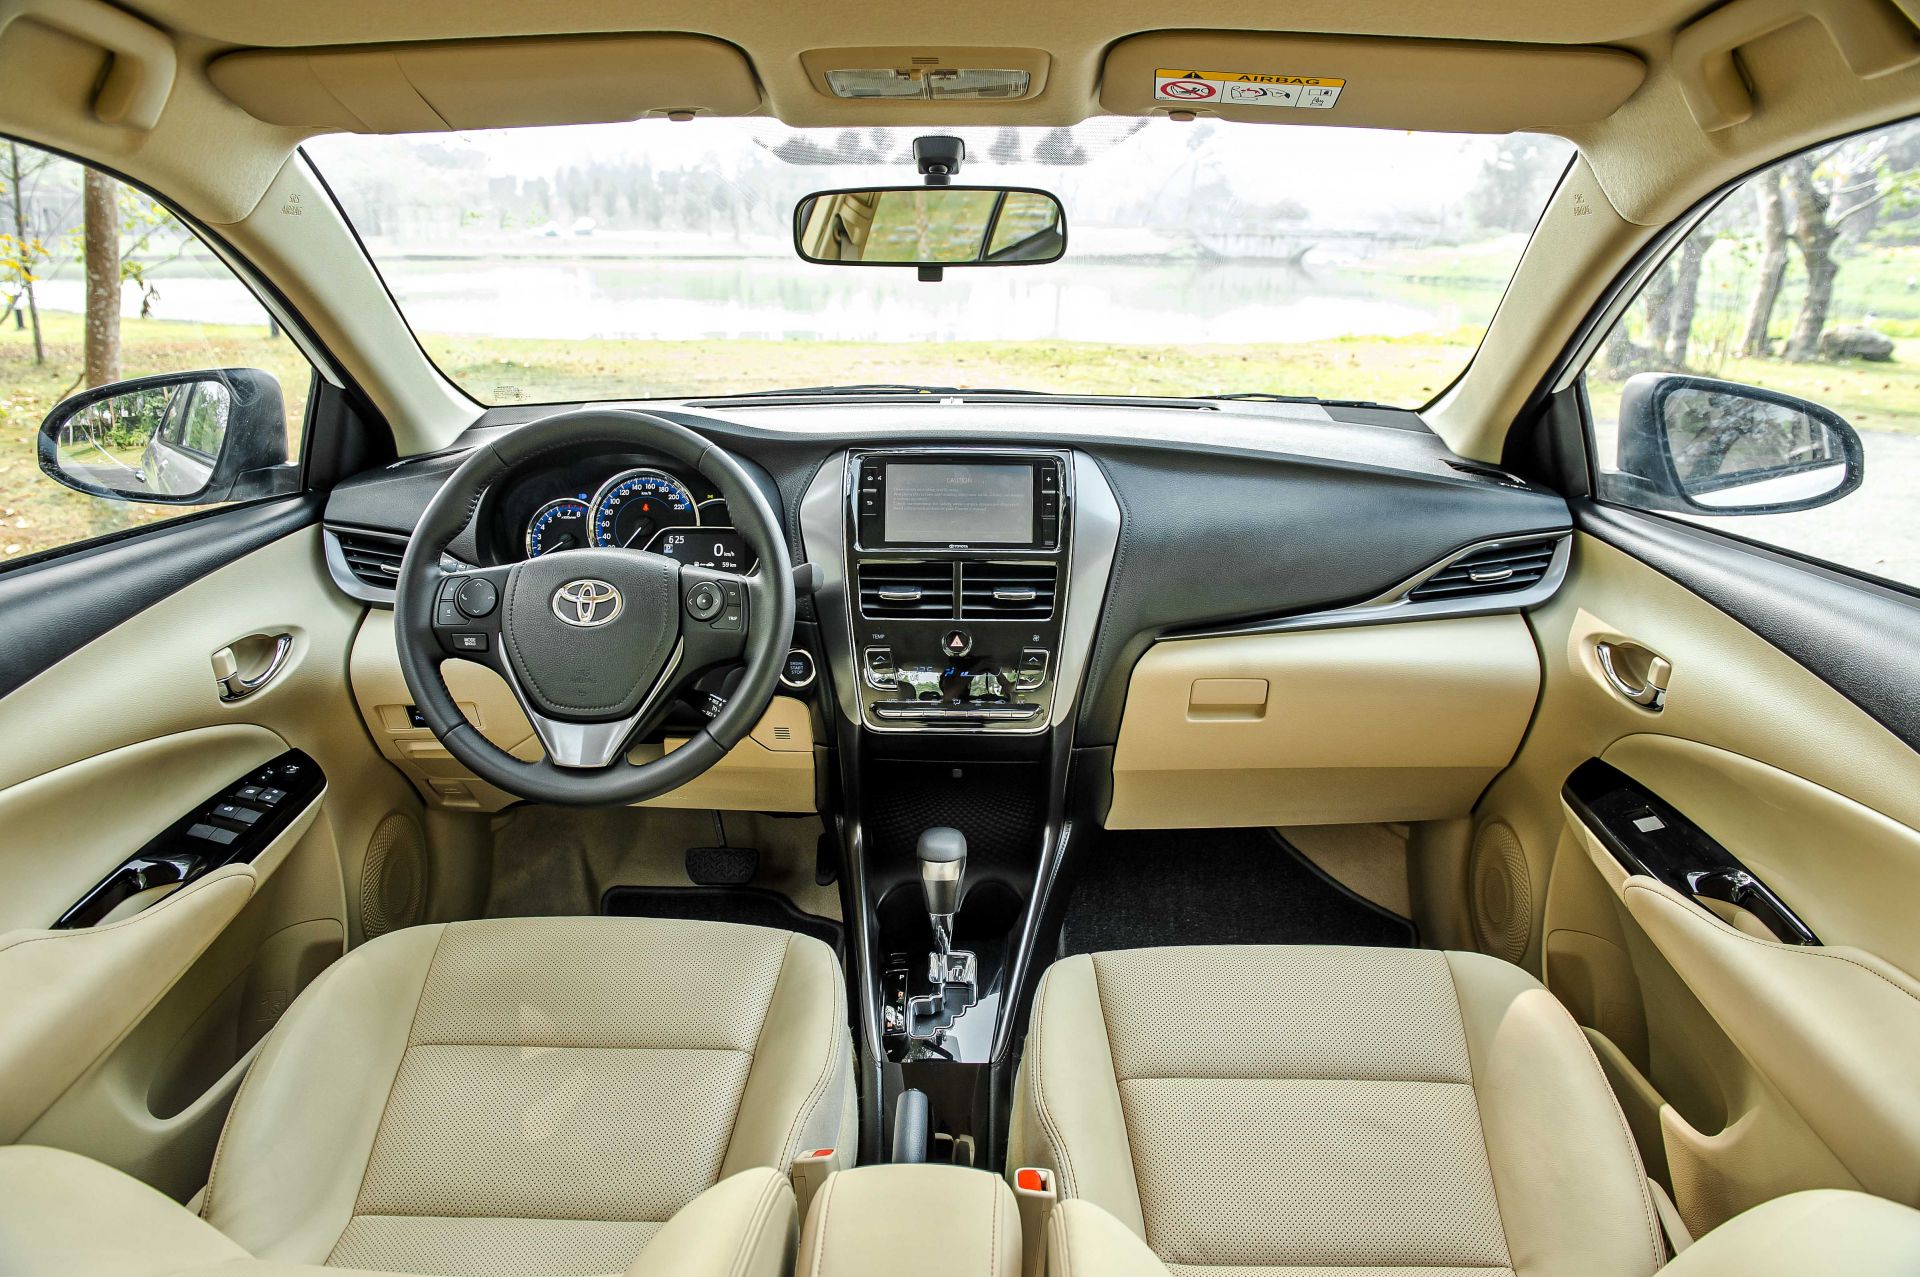 Mua xe Toyota Vios 2021: Giá lăn bánh vios & đánh giá thông số kỹ thuật - Ảnh 7